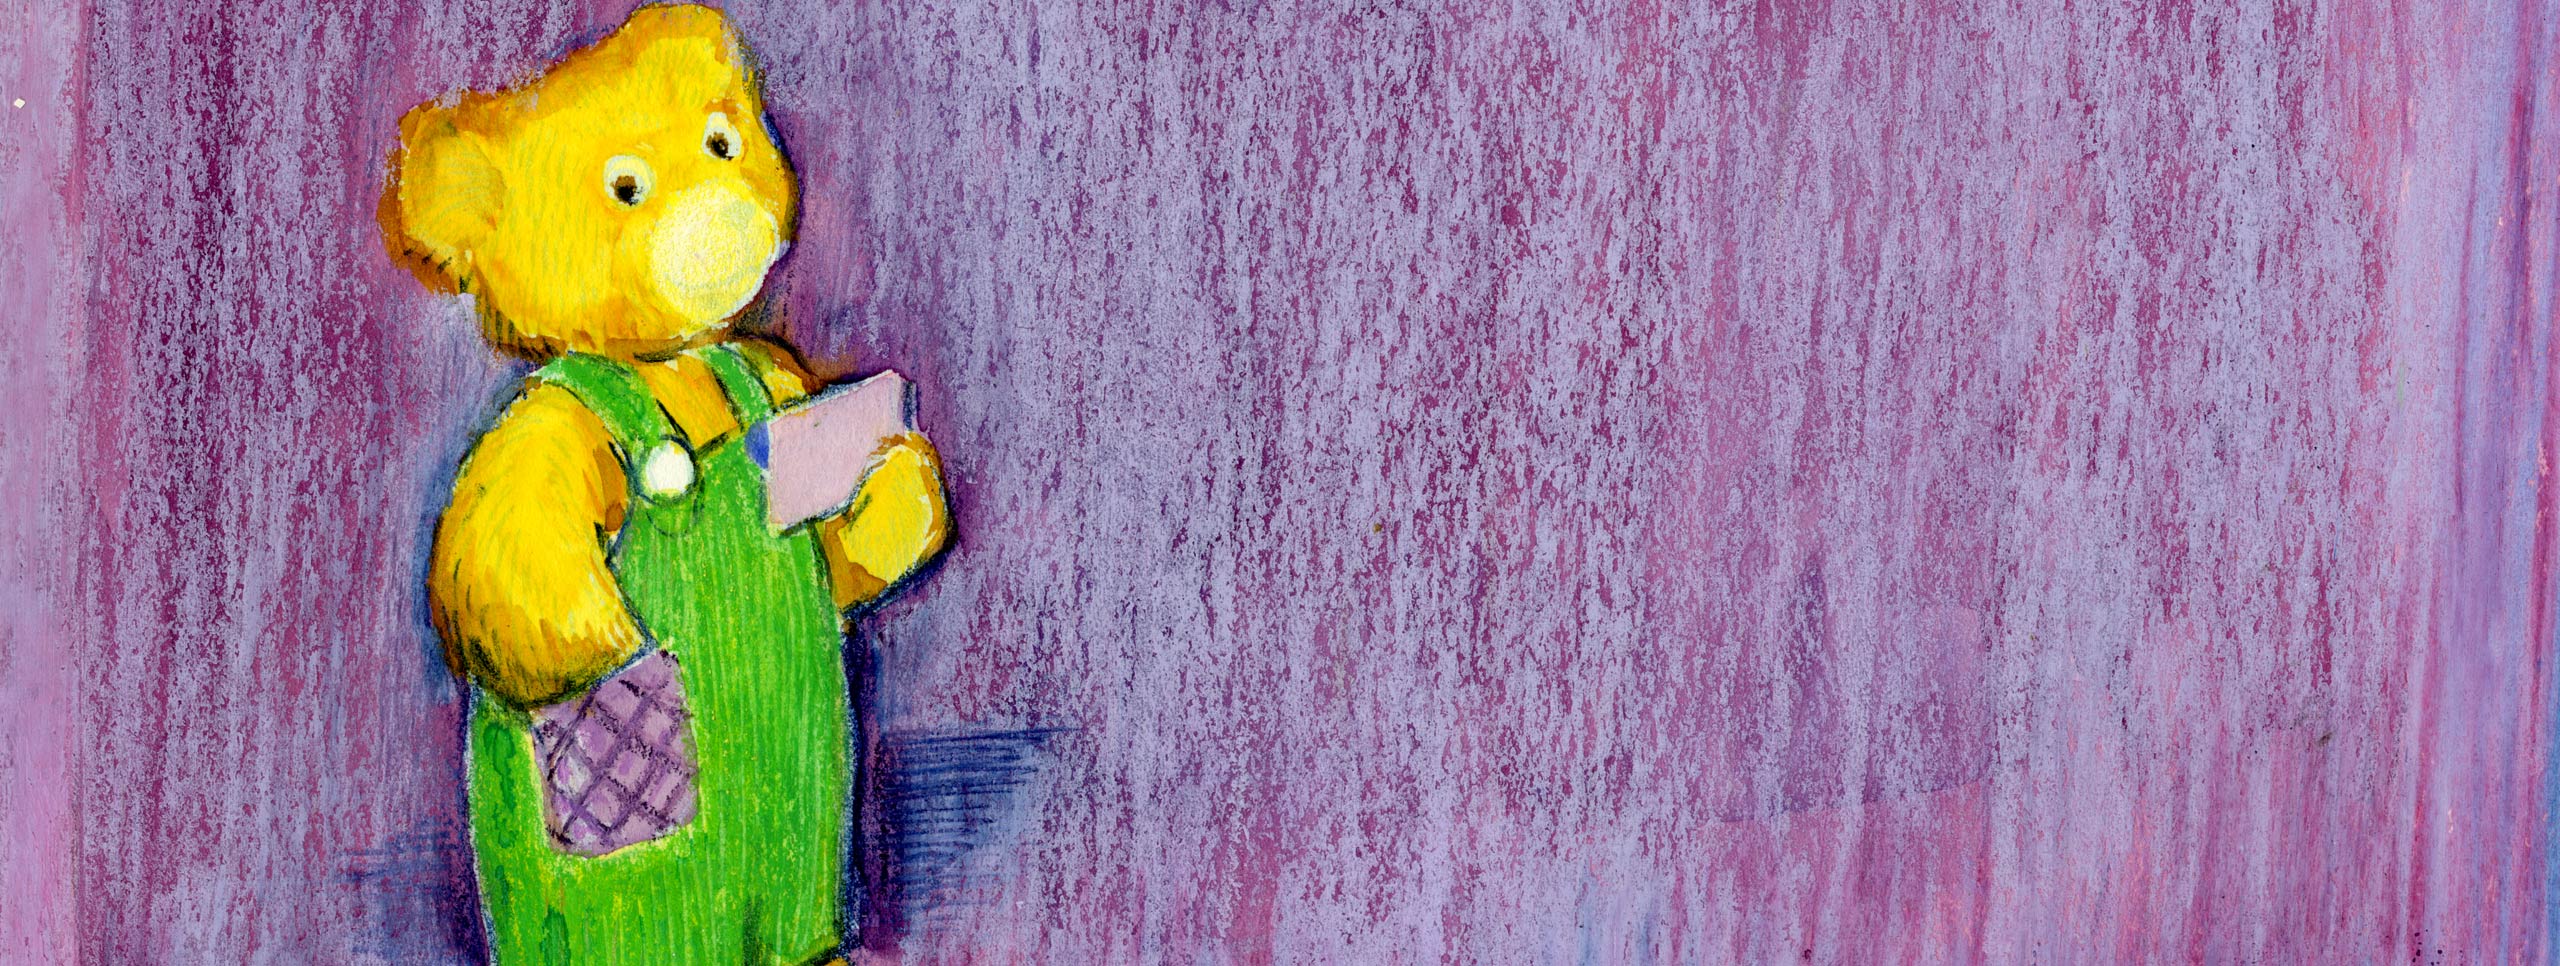 与金玩具熊的紫色背景。 熊身穿绿色工作服，紫色口袋，手拿一张便条纸